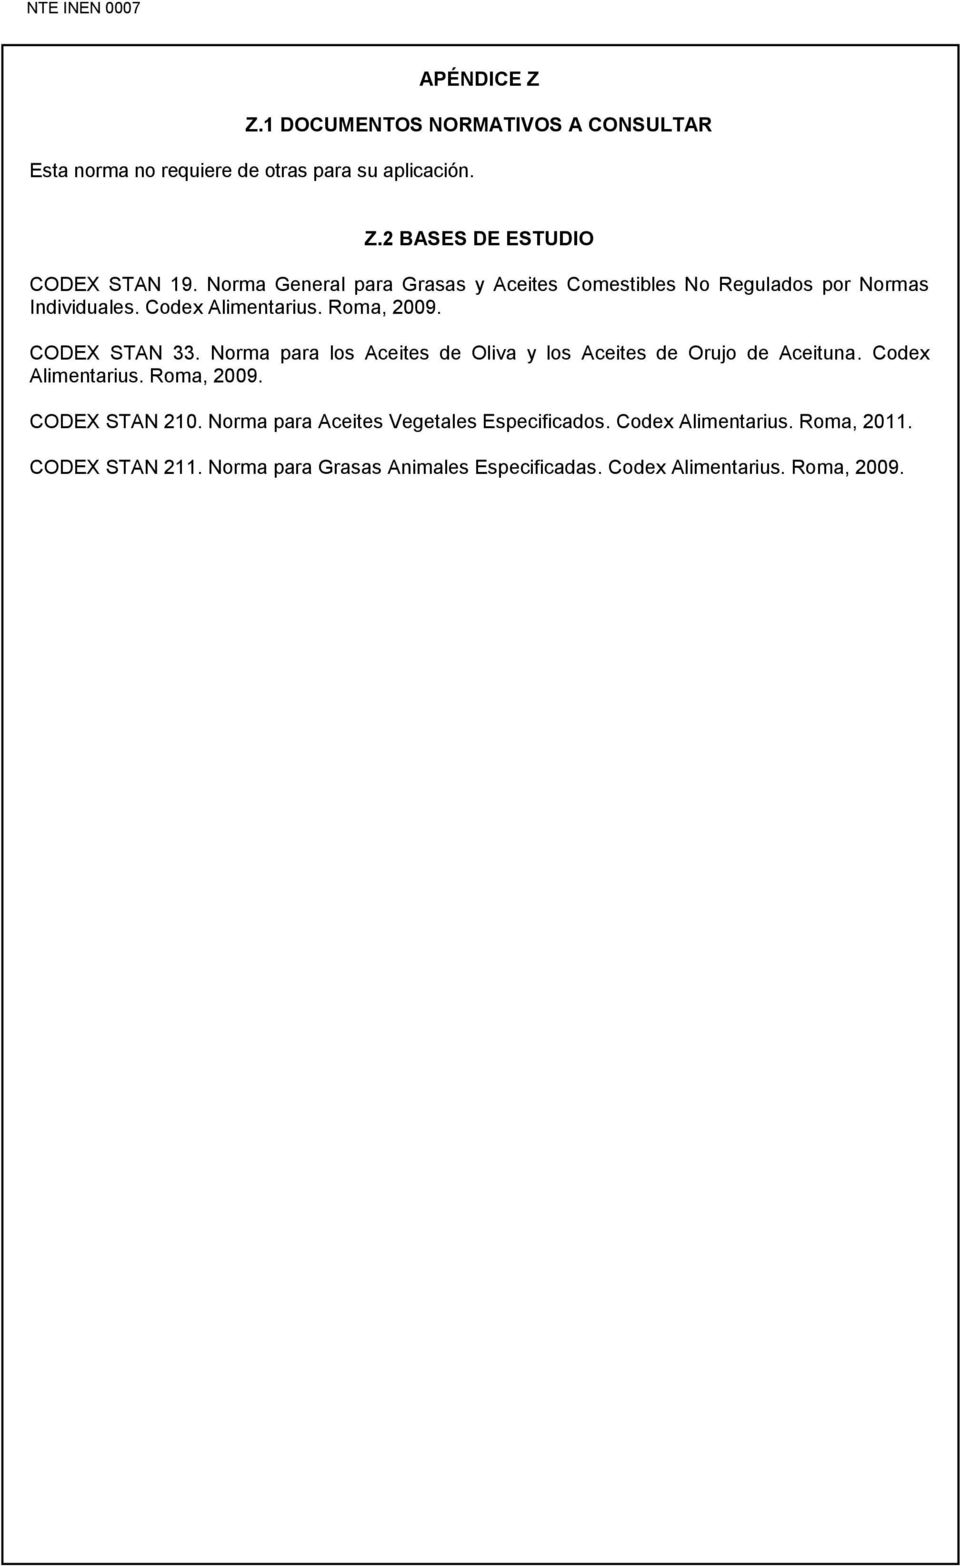 Norma para los Aceites de Oliva y los Aceites de Orujo de Aceituna. Codex Alimentarius. Roma, 2009. CODEX STAN 210.